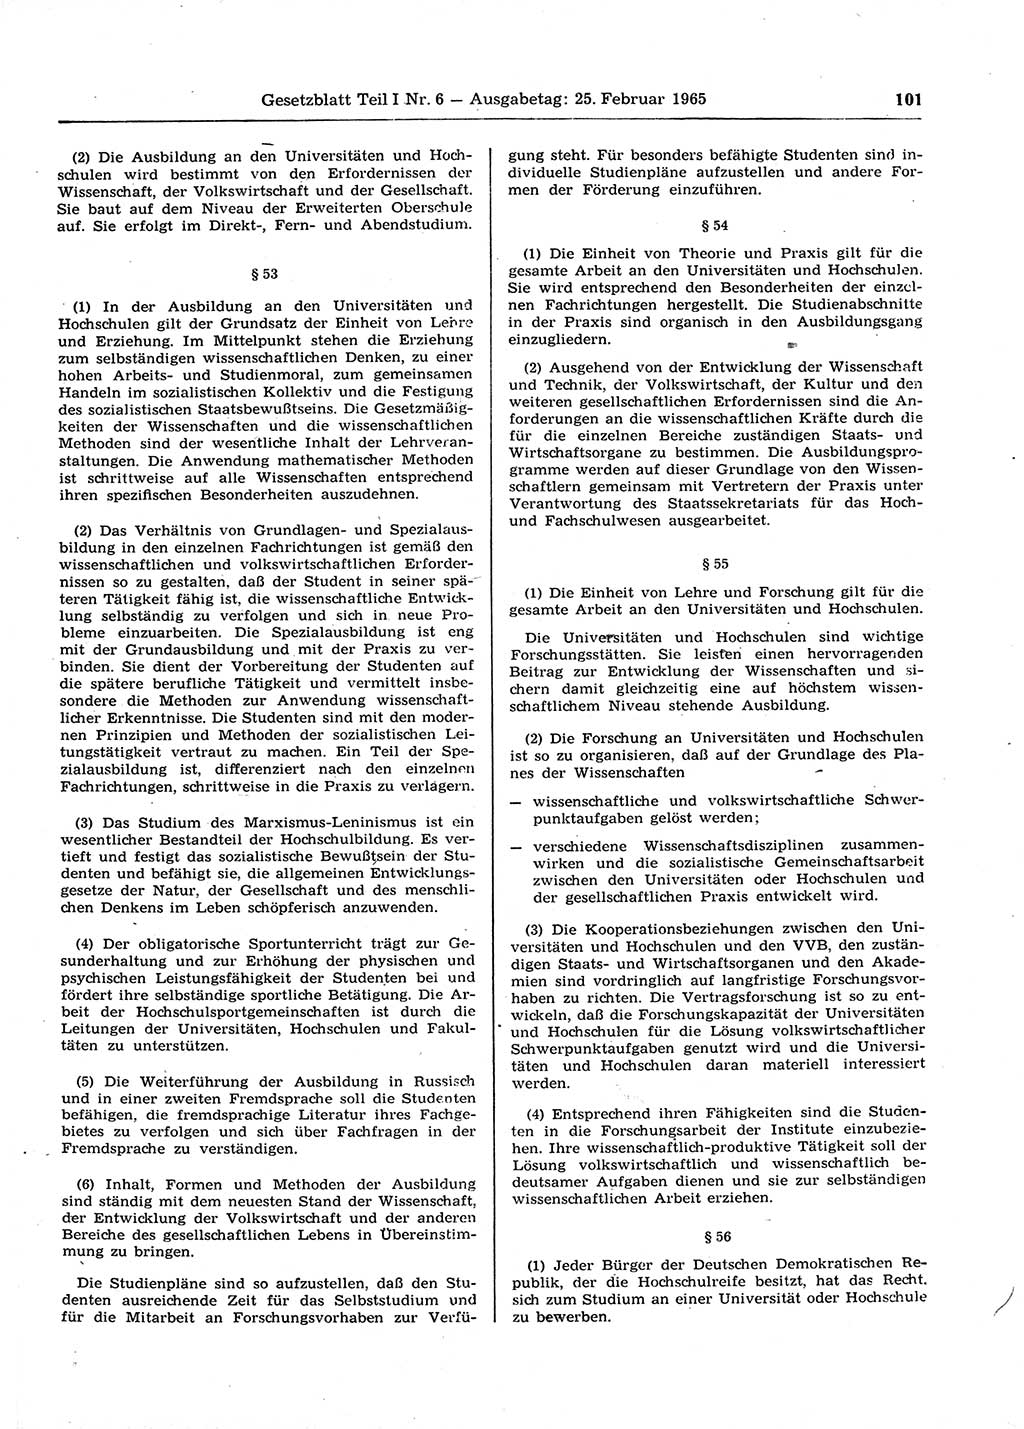 Gesetzblatt (GBl.) der Deutschen Demokratischen Republik (DDR) Teil Ⅰ 1965, Seite 101 (GBl. DDR Ⅰ 1965, S. 101)